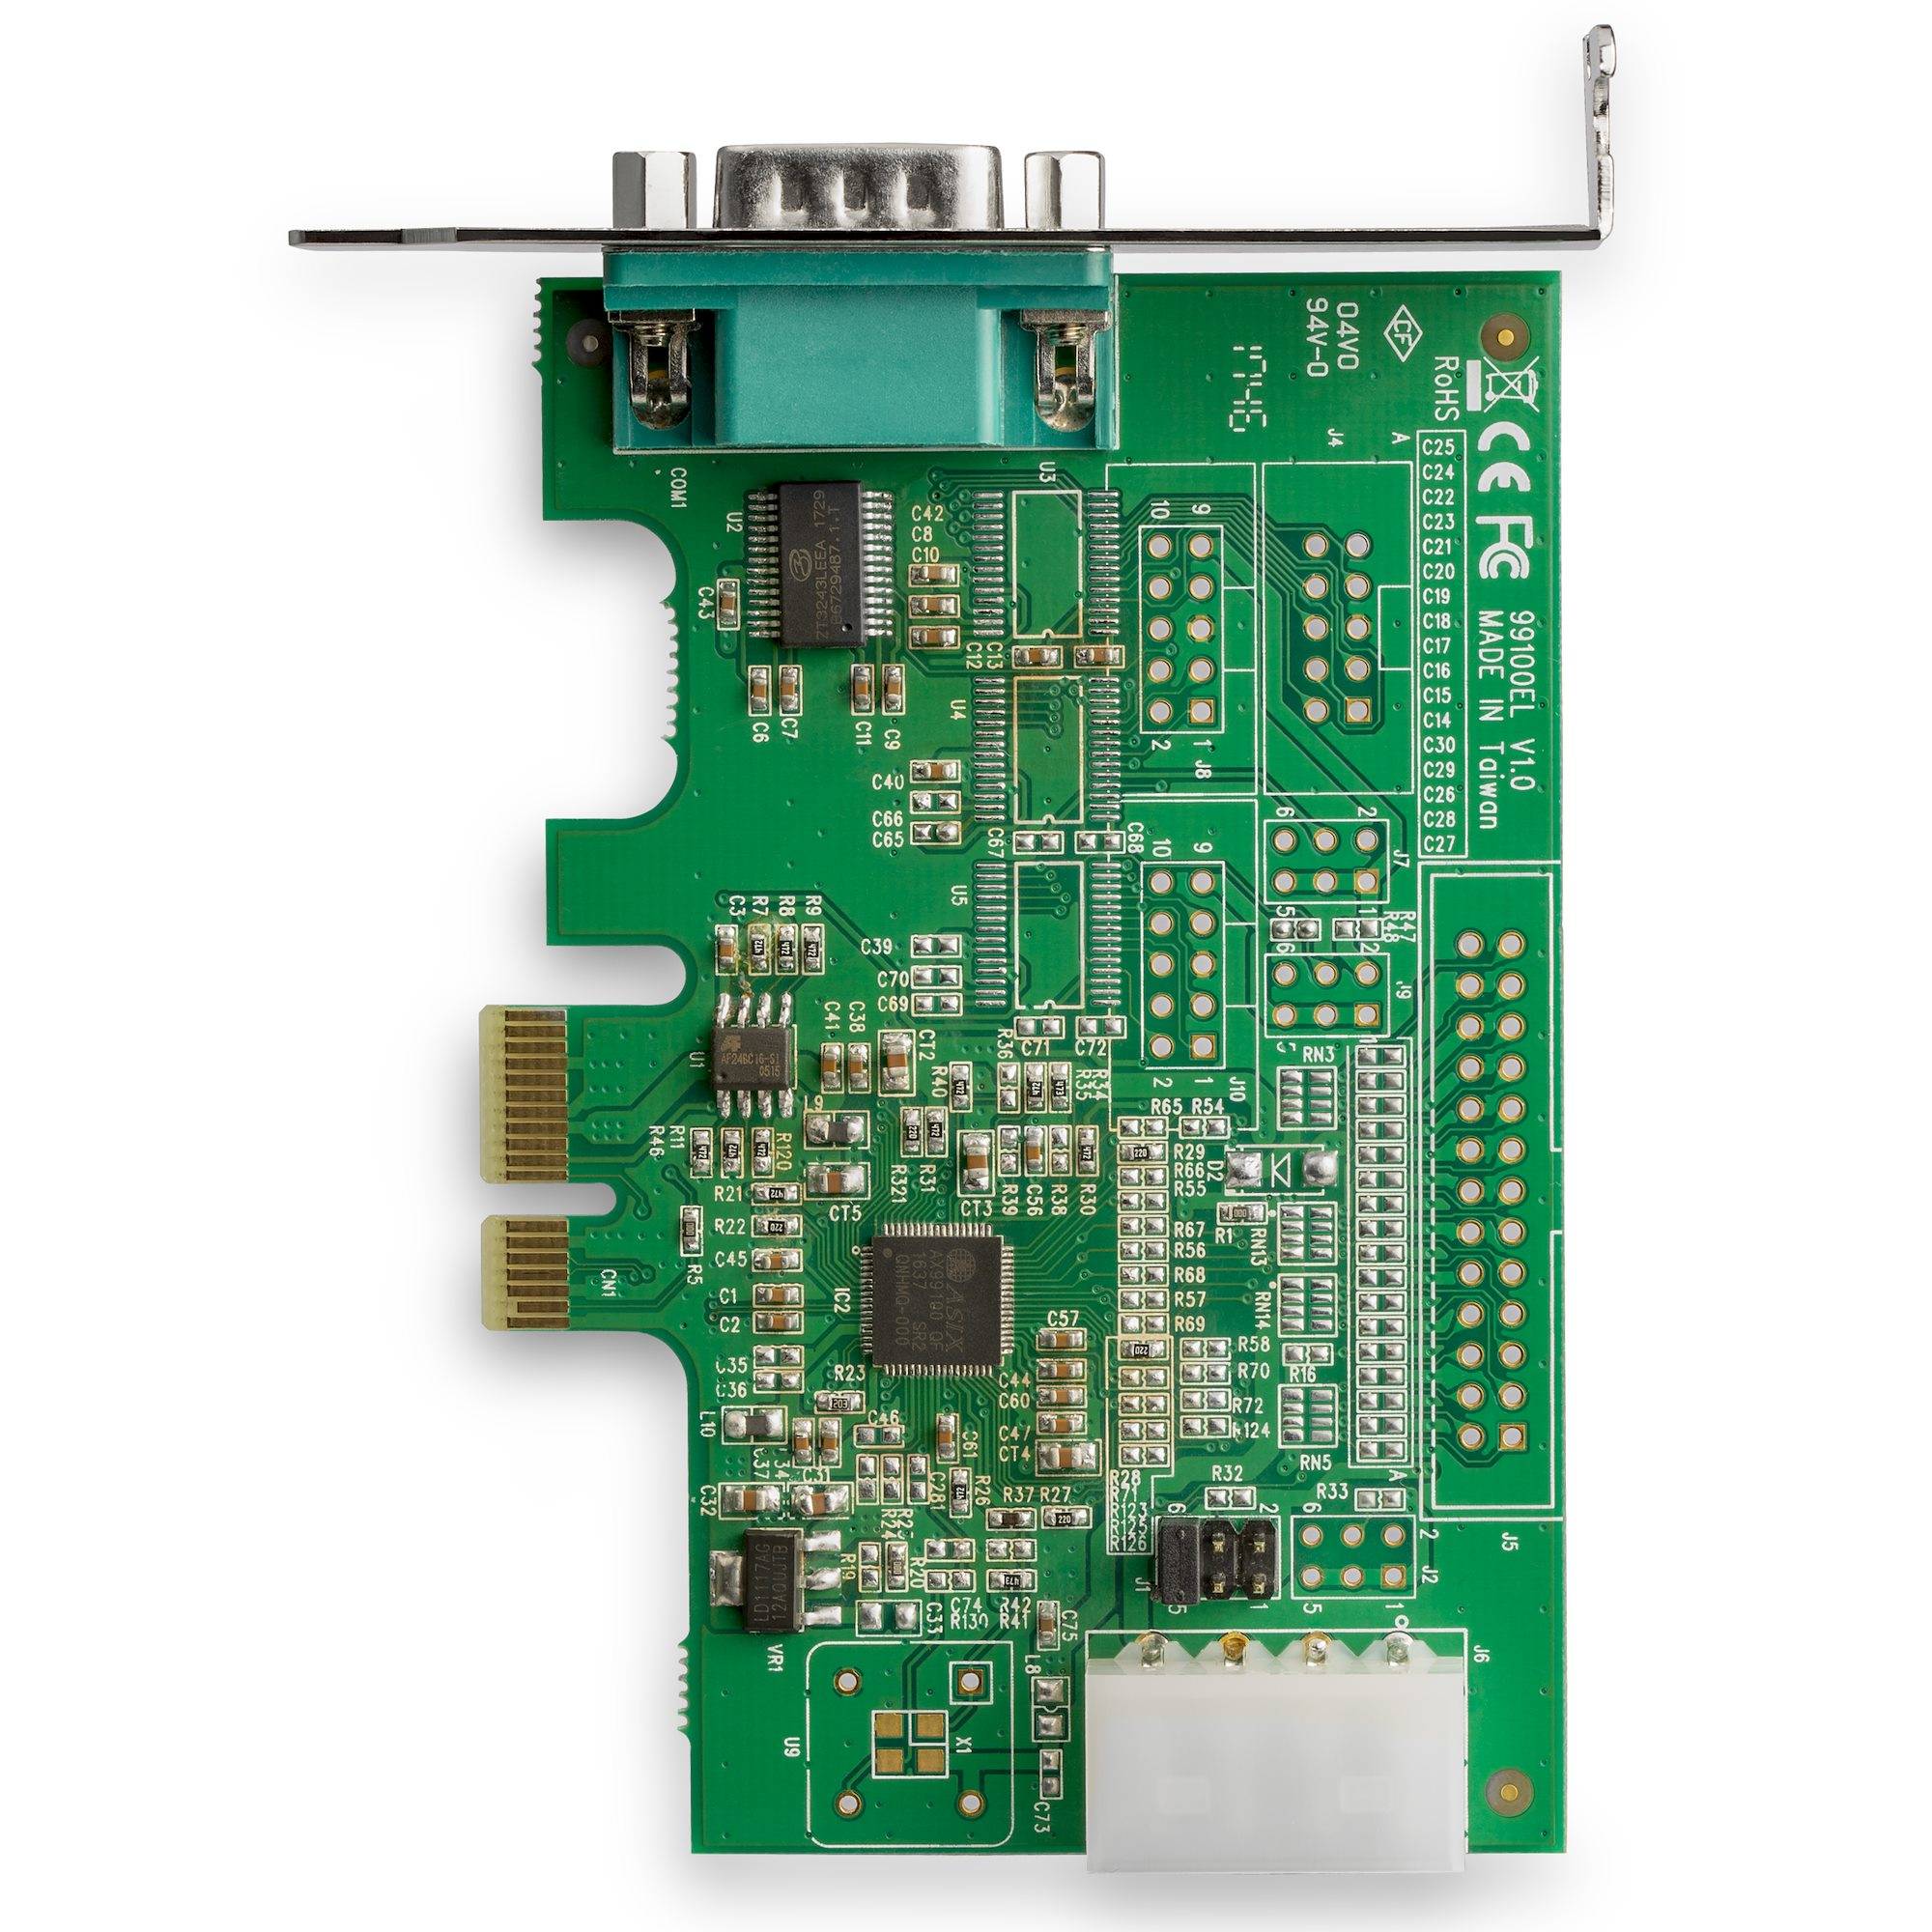 Rca Informatique - image du produit : 1PORT RS232 SERIAL PORT PCI EXPRESS CARD - 16950 UART